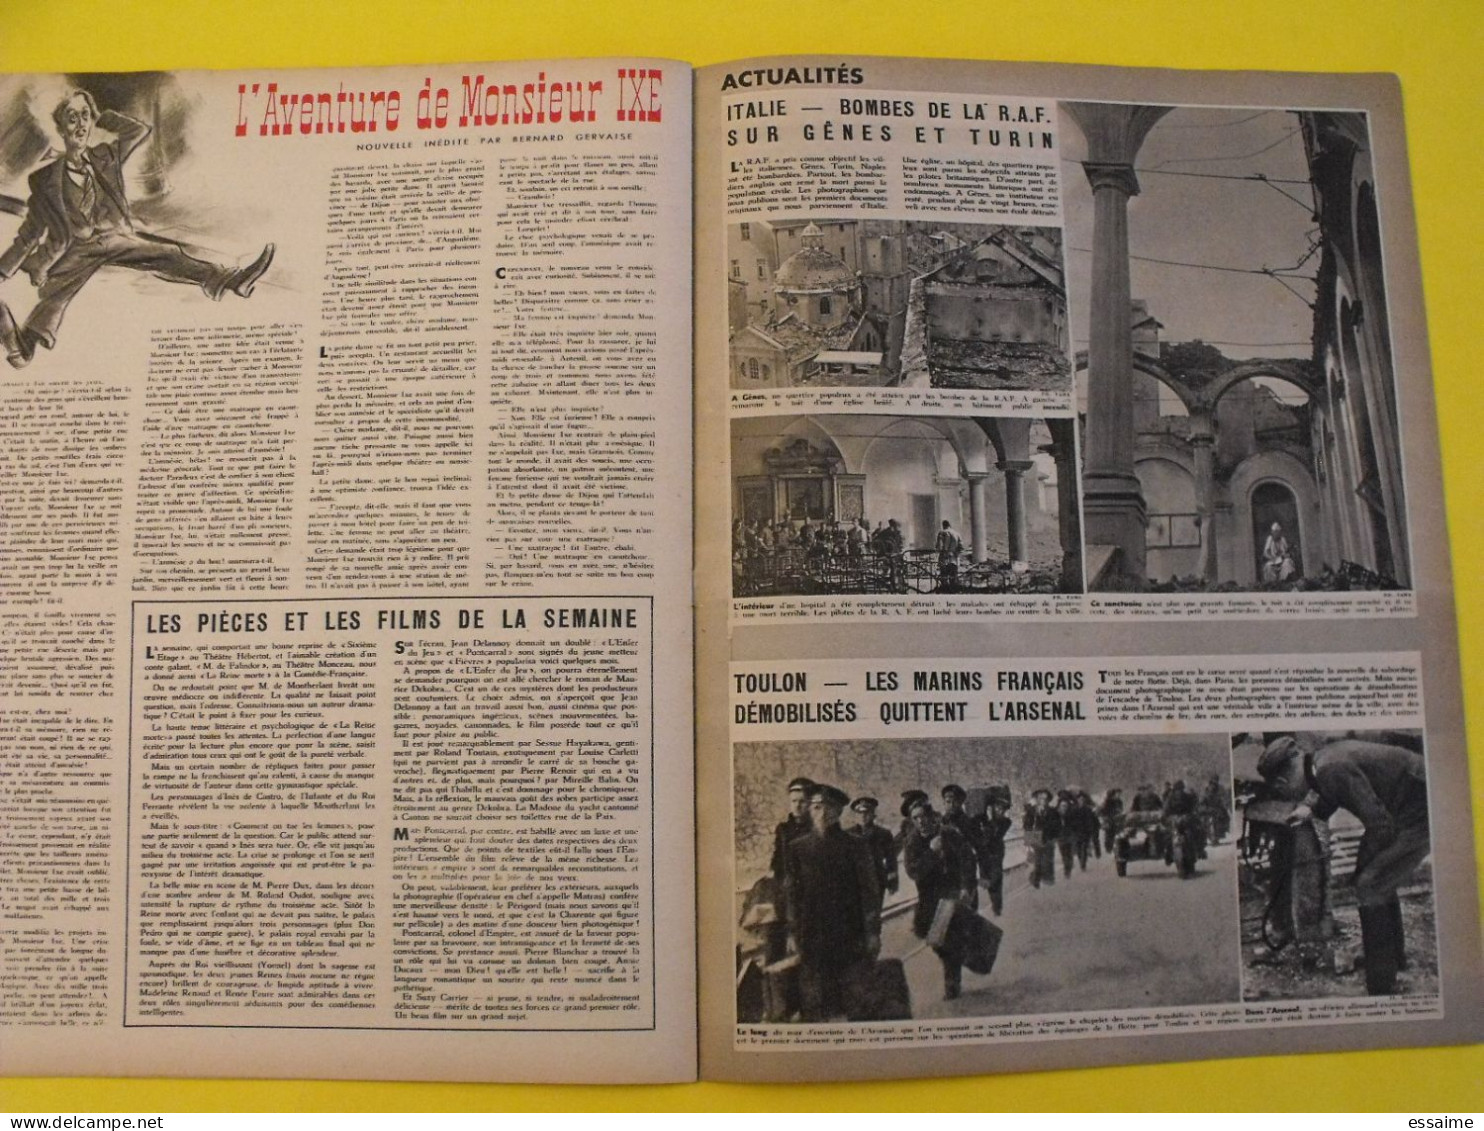 6 revues La semaine de 1942-1943. actualités guerre photos collaboration odette joyeux franco  birmanie berlin maroc